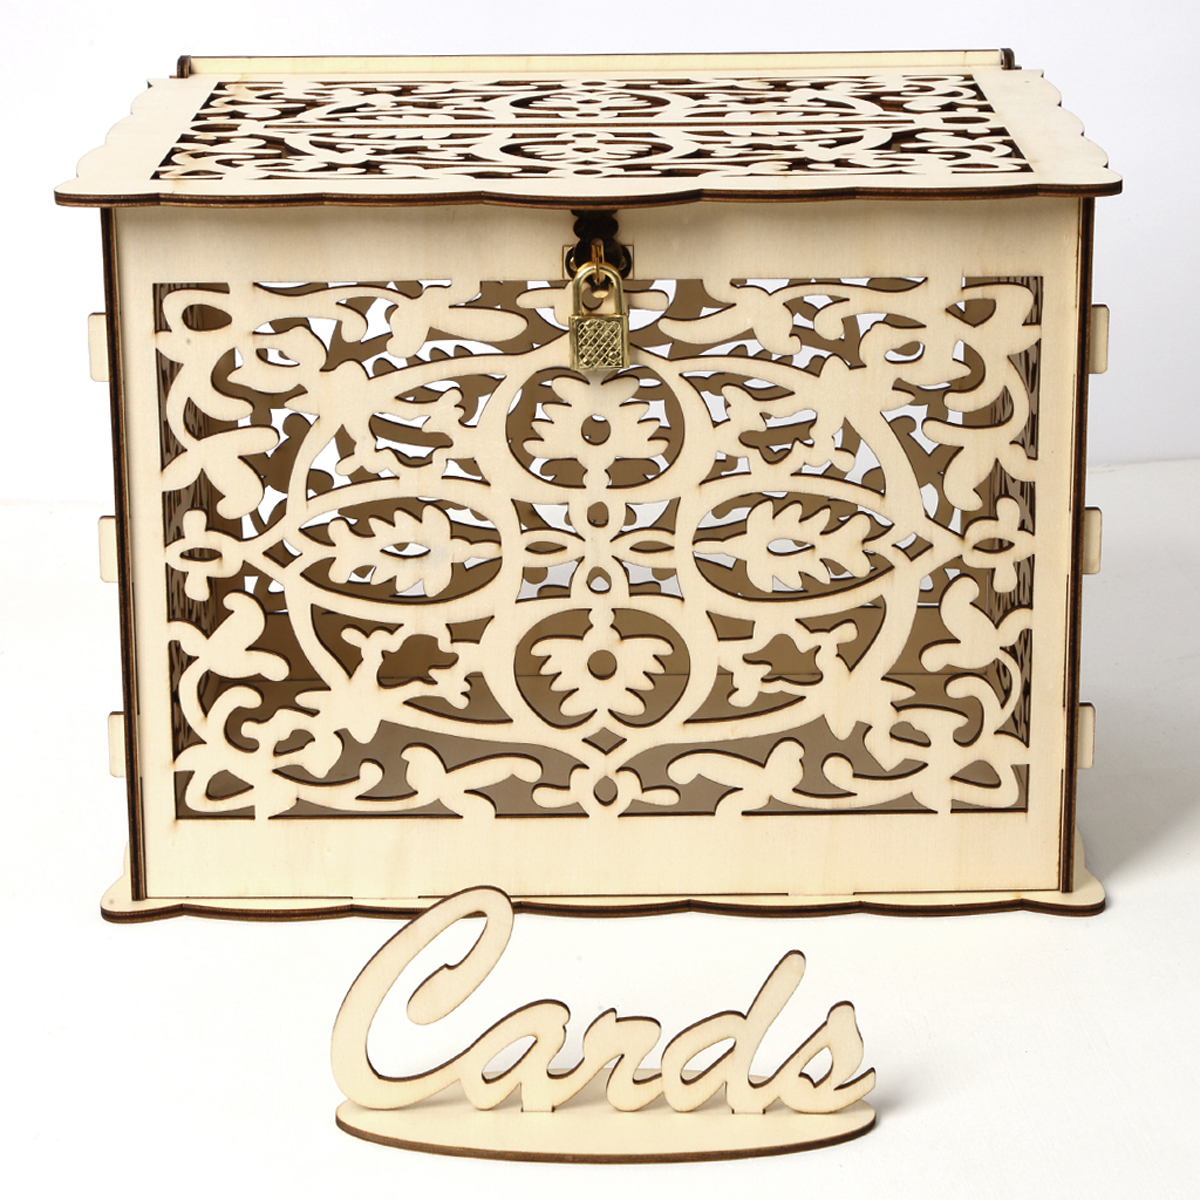 

DIY Wedding Gift Card Box Wooden Money Storage with Lock Decor Supplies